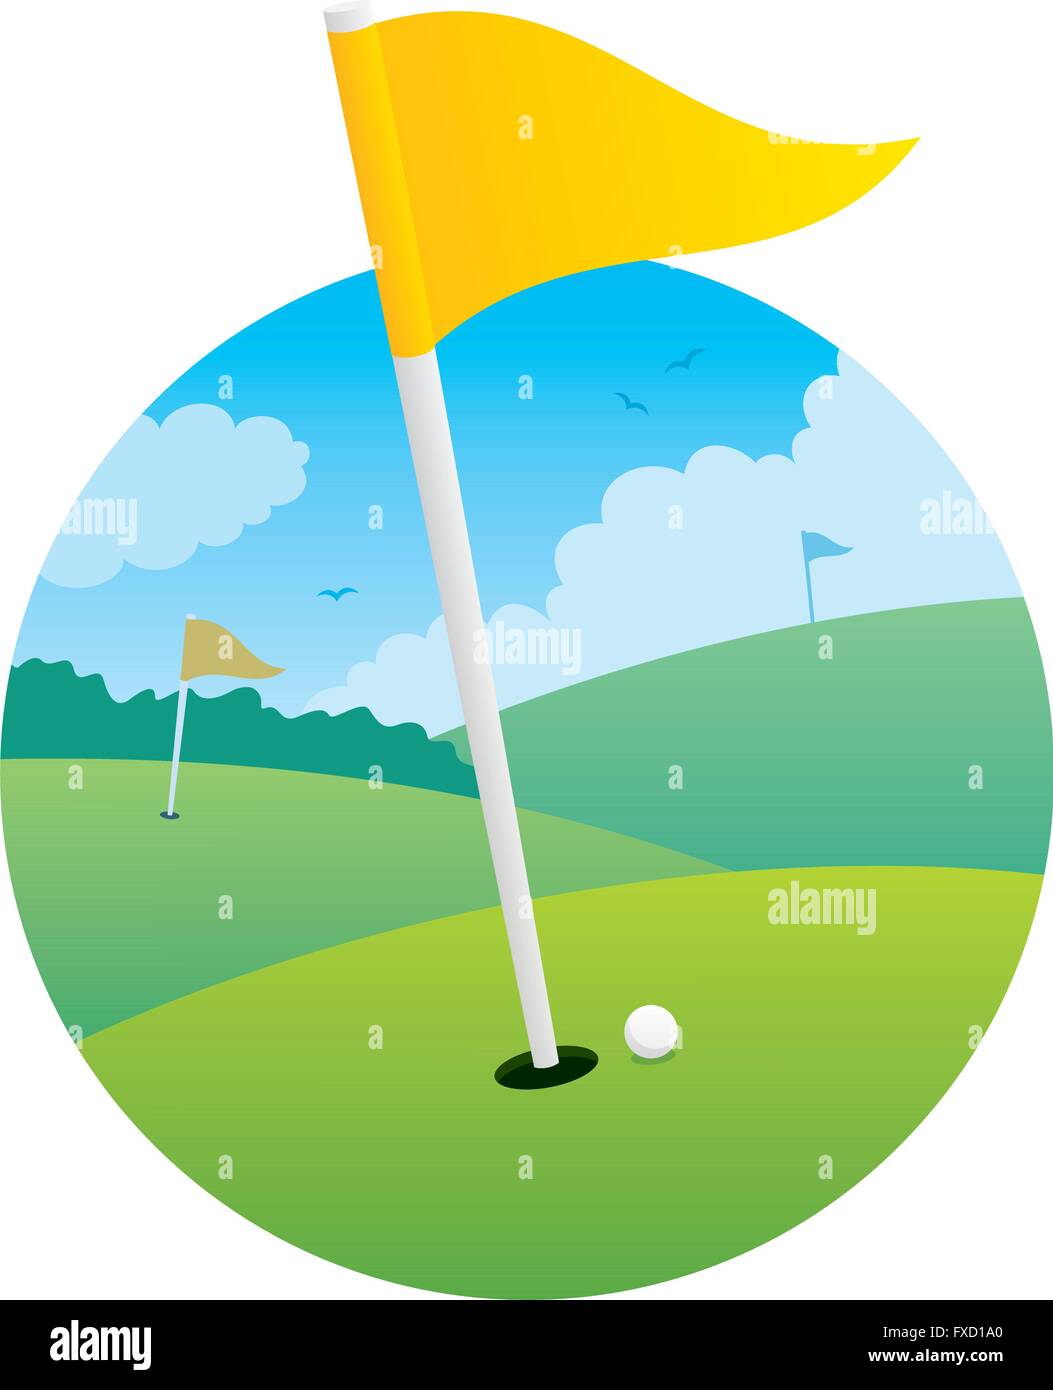 Immagine del campo da golf focalizzata sulla bandiera. Illustrazione Vettoriale